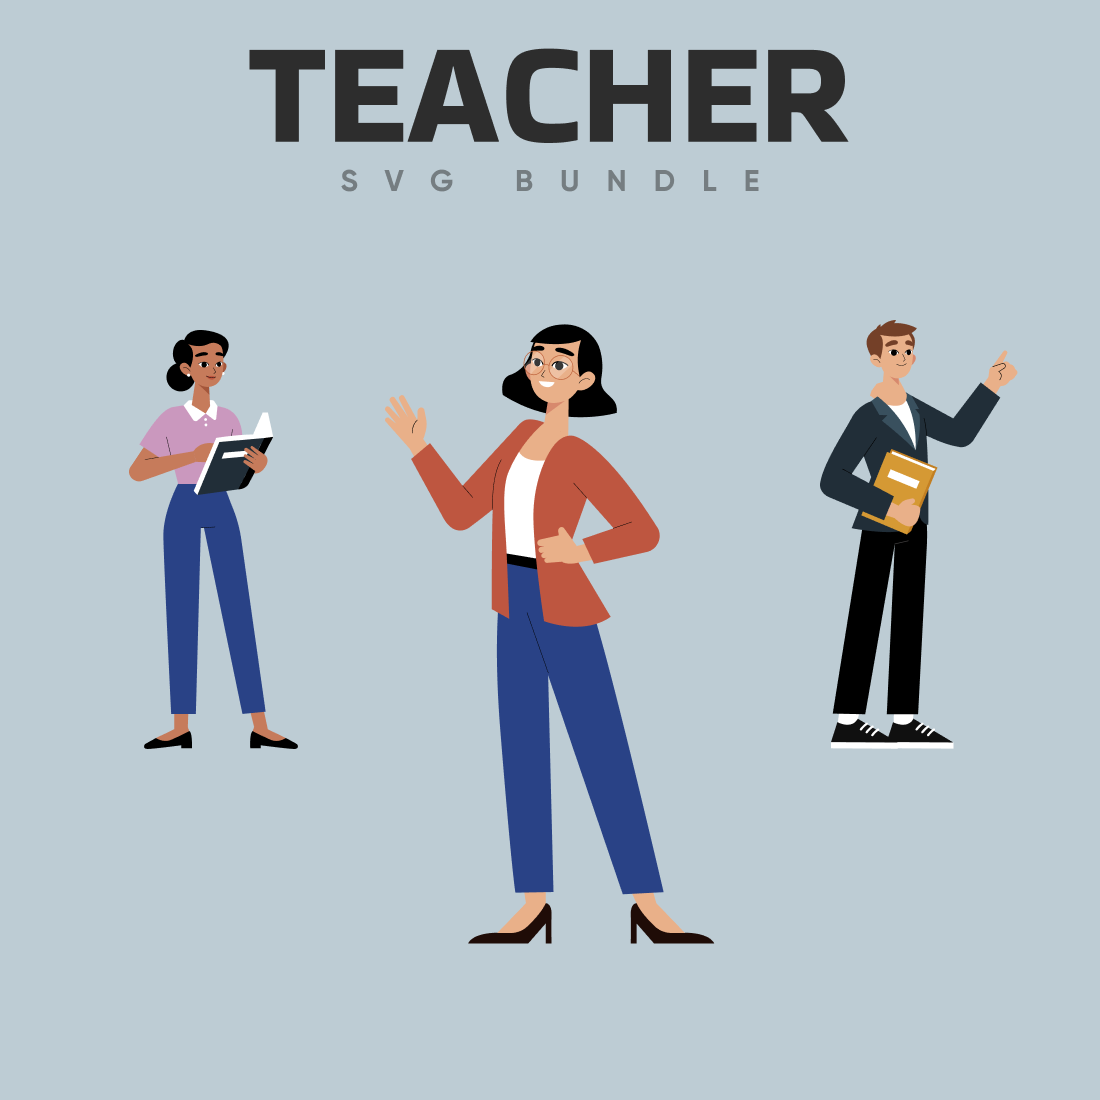 Teacher svg bundle.